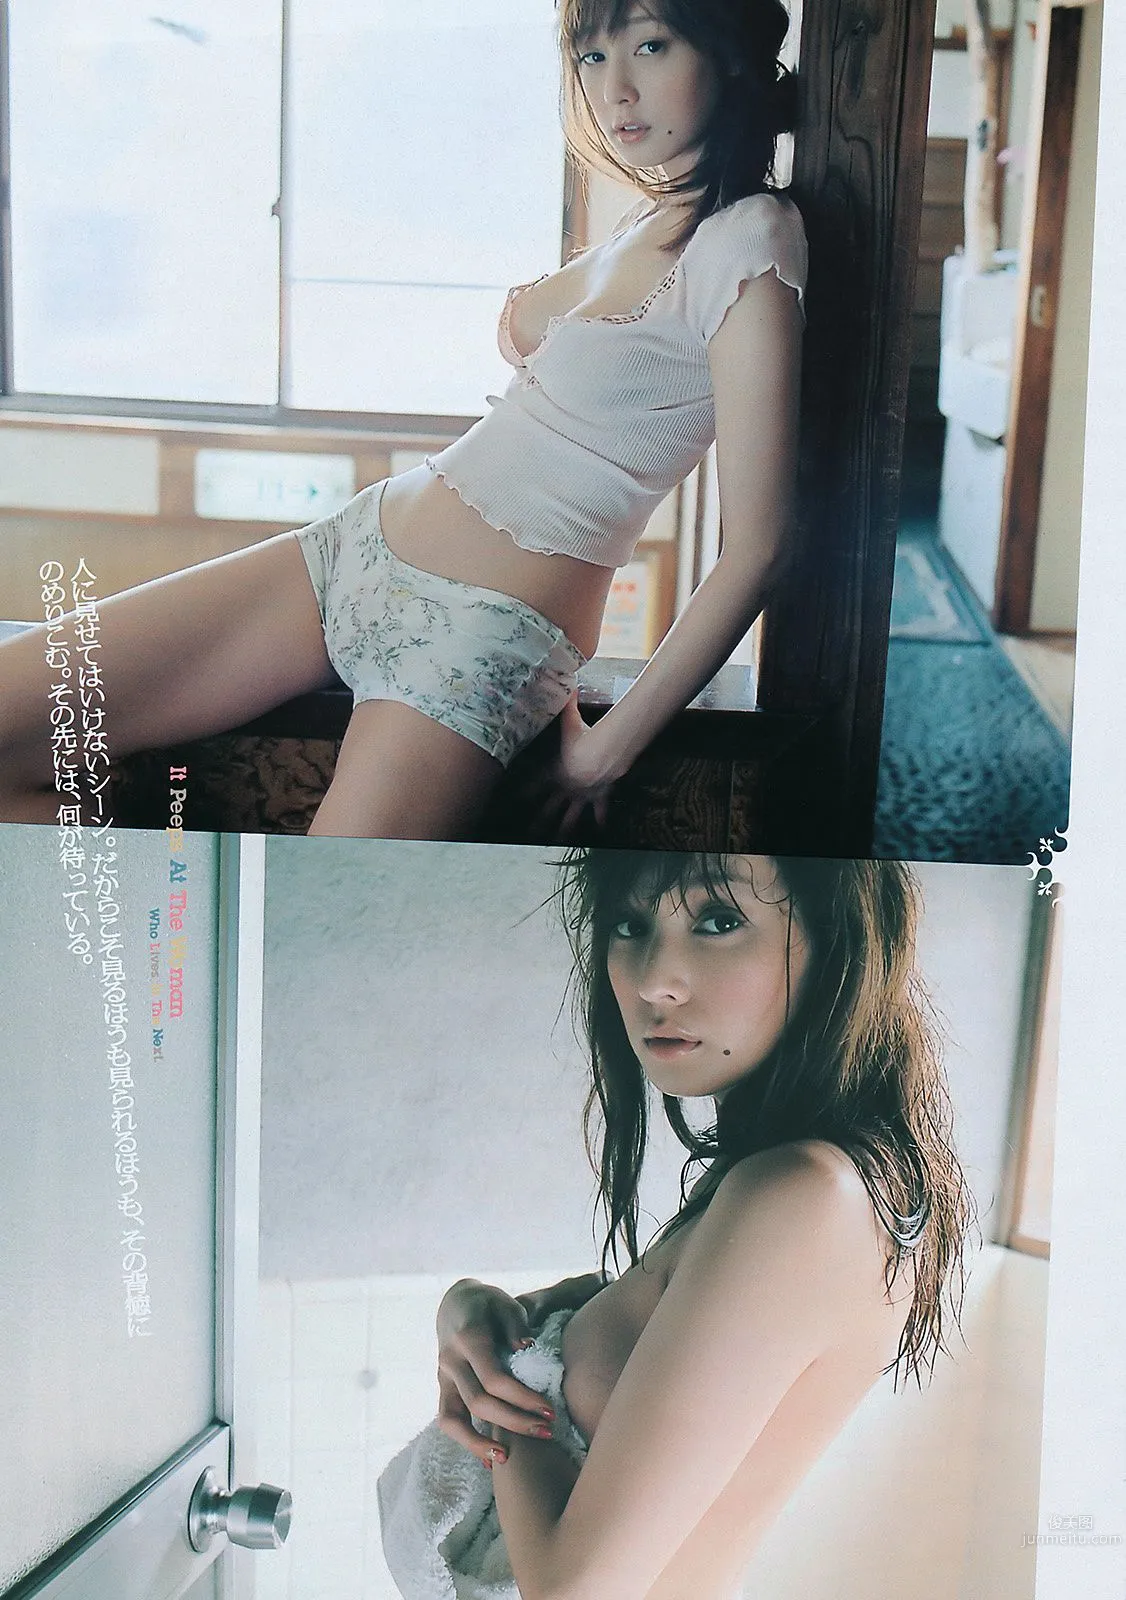 桐谷美玲 仁藤みさき 高桥爱 青木爱 AKB48 池田夏希 [Weekly Playboy] 2011年No.38 写真杂志35